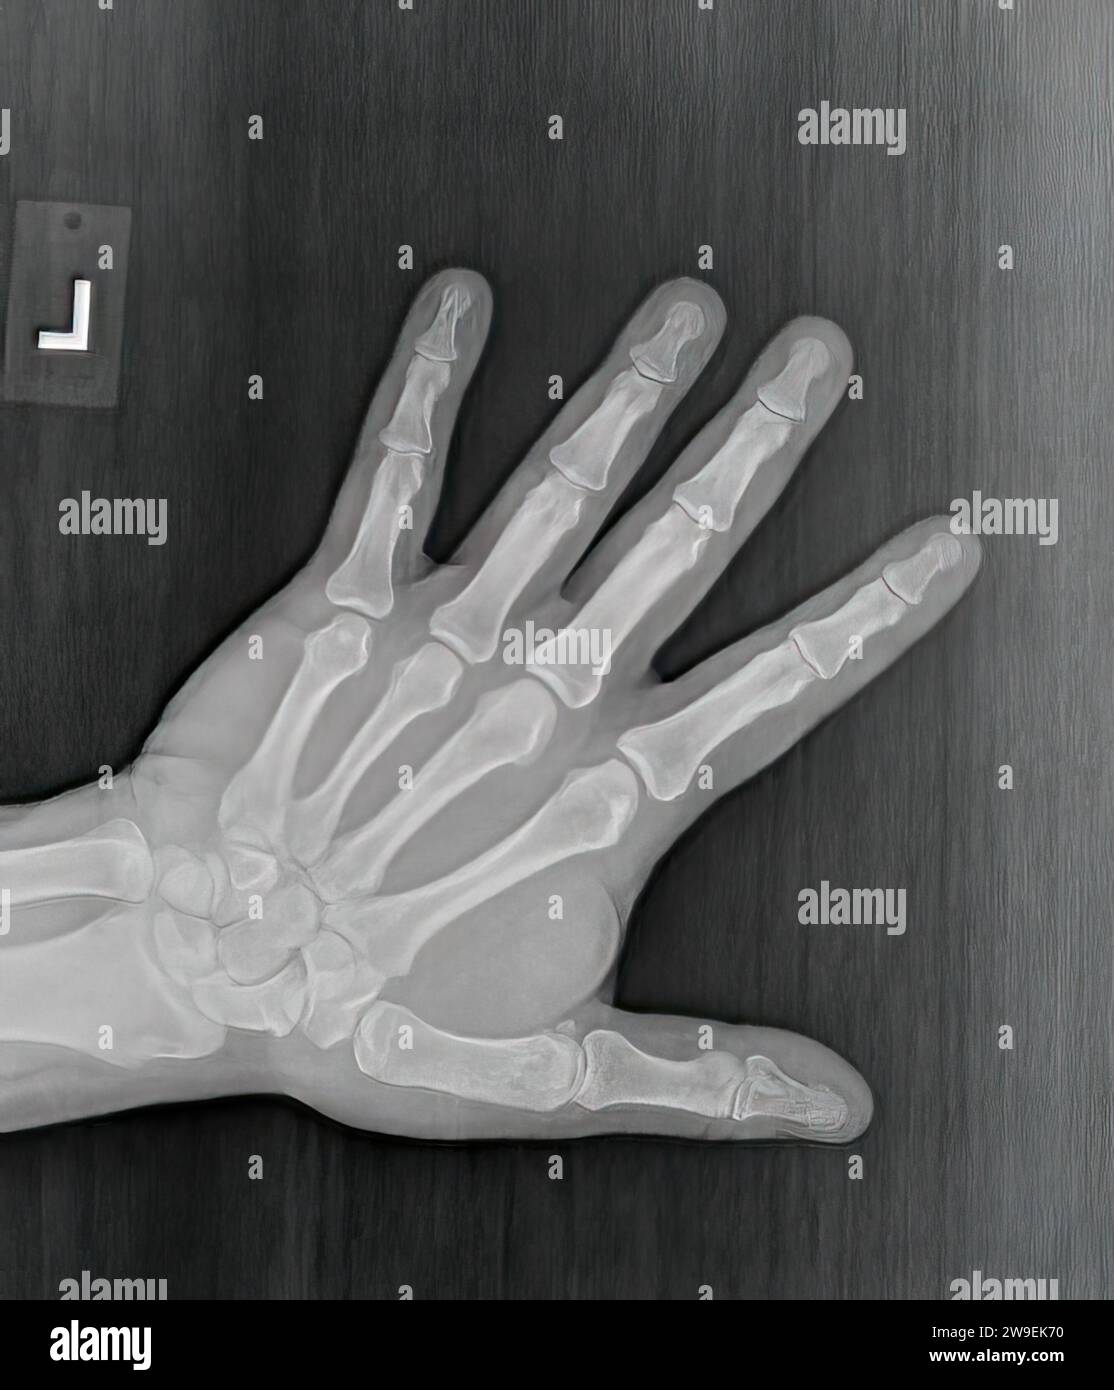 Radiographie de film ou radiographie d'une main gauche normale d'un homme adulte. La vue AP montre la main de l'homme. structure osseuse normale de toutes les phalanges os carpiens métacariens Banque D'Images